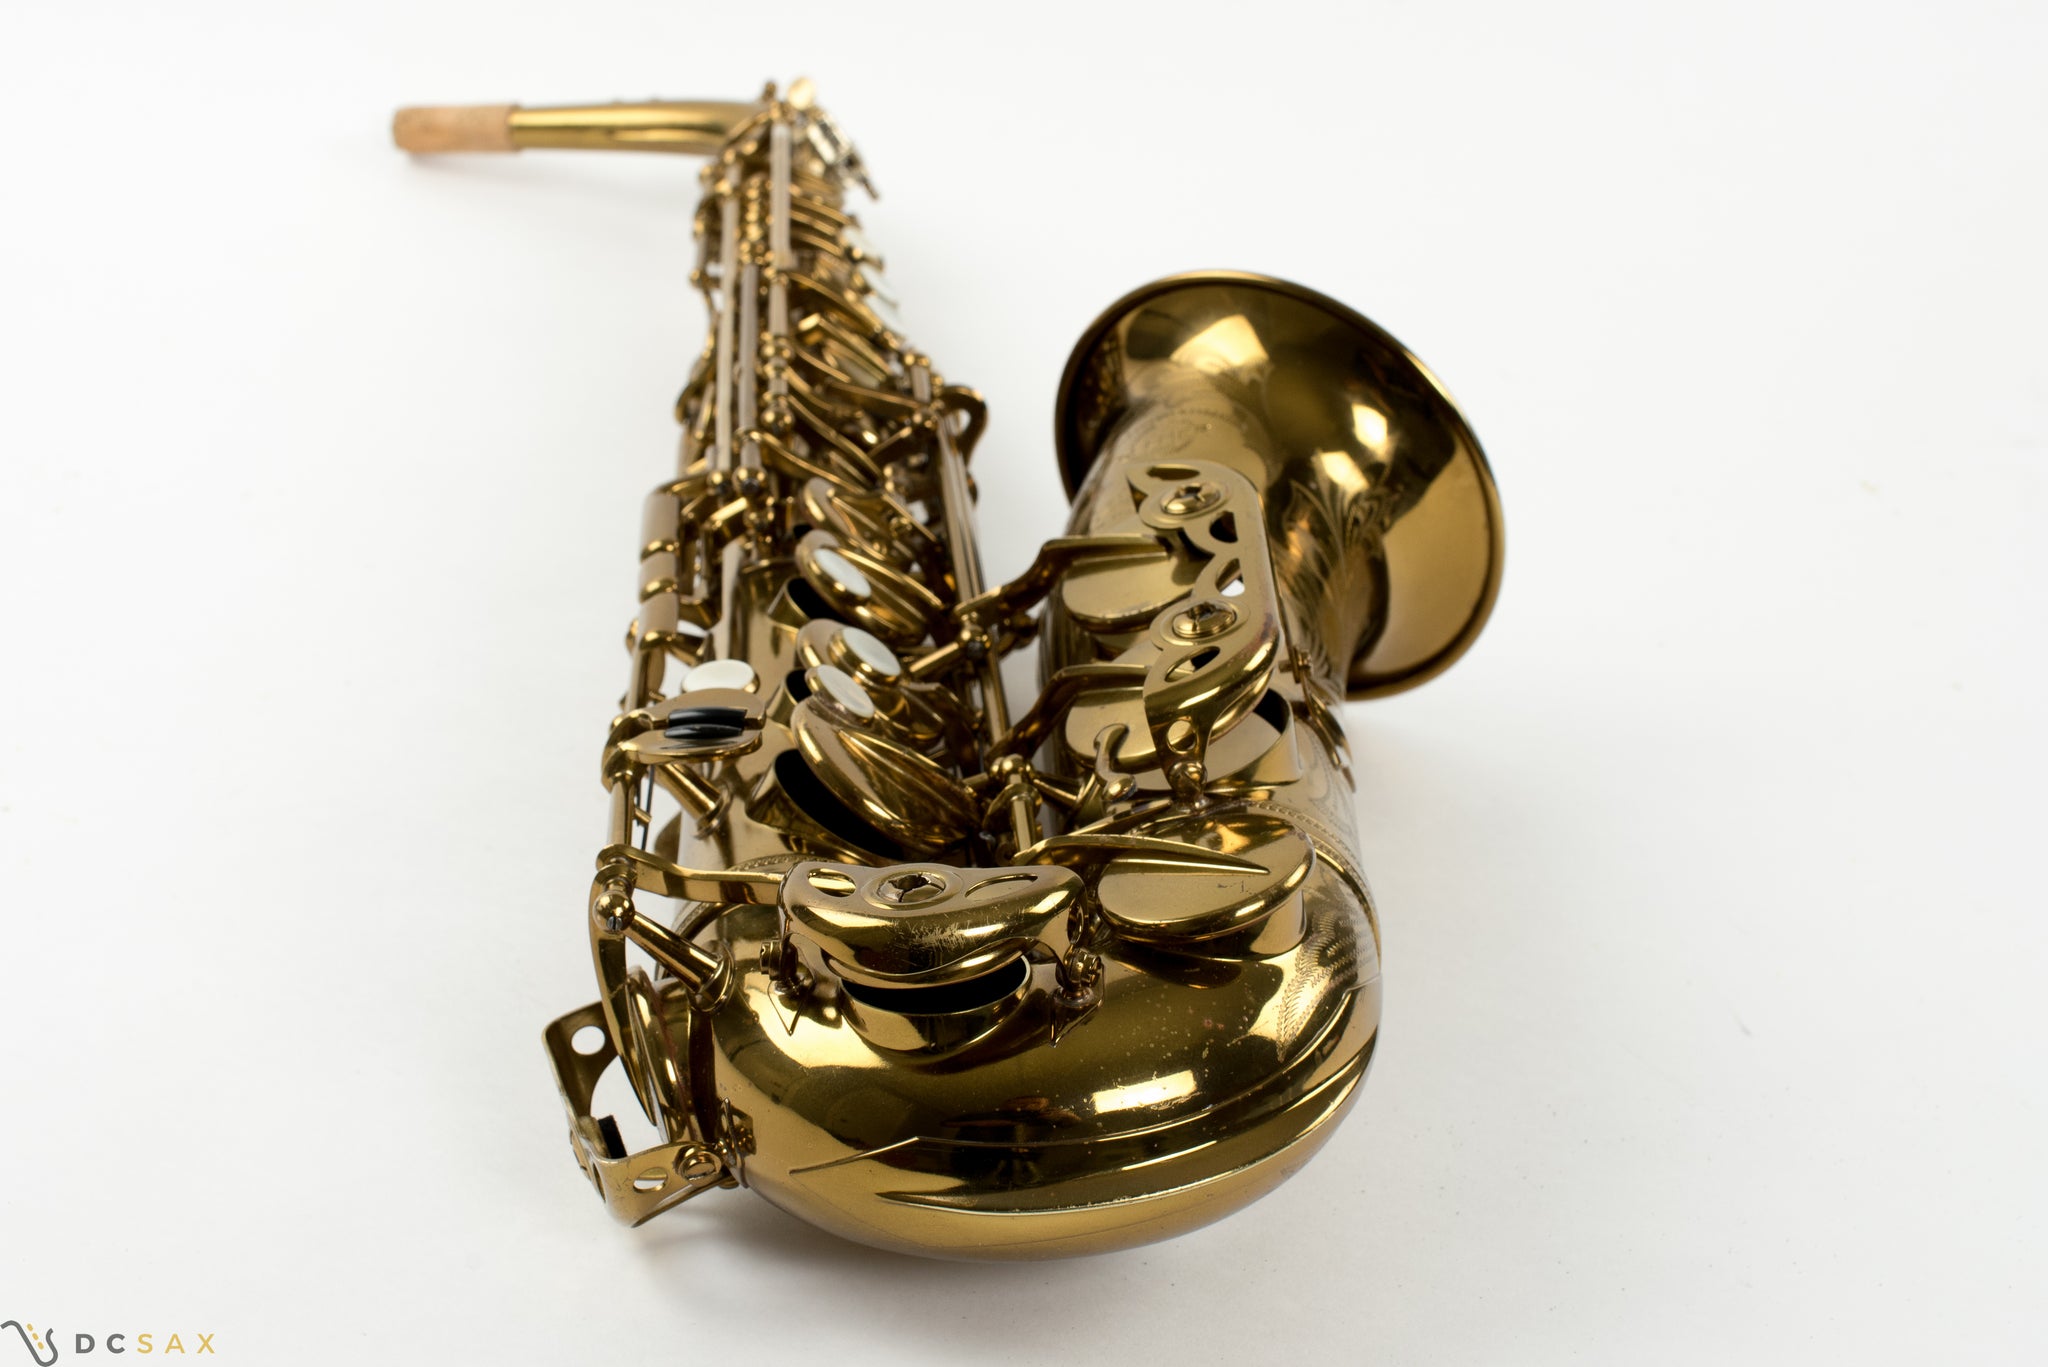 53,xxx Selmer Super Balanced Action Alto Saxophone, 98% Original Lacquer, Fresh Overhaul